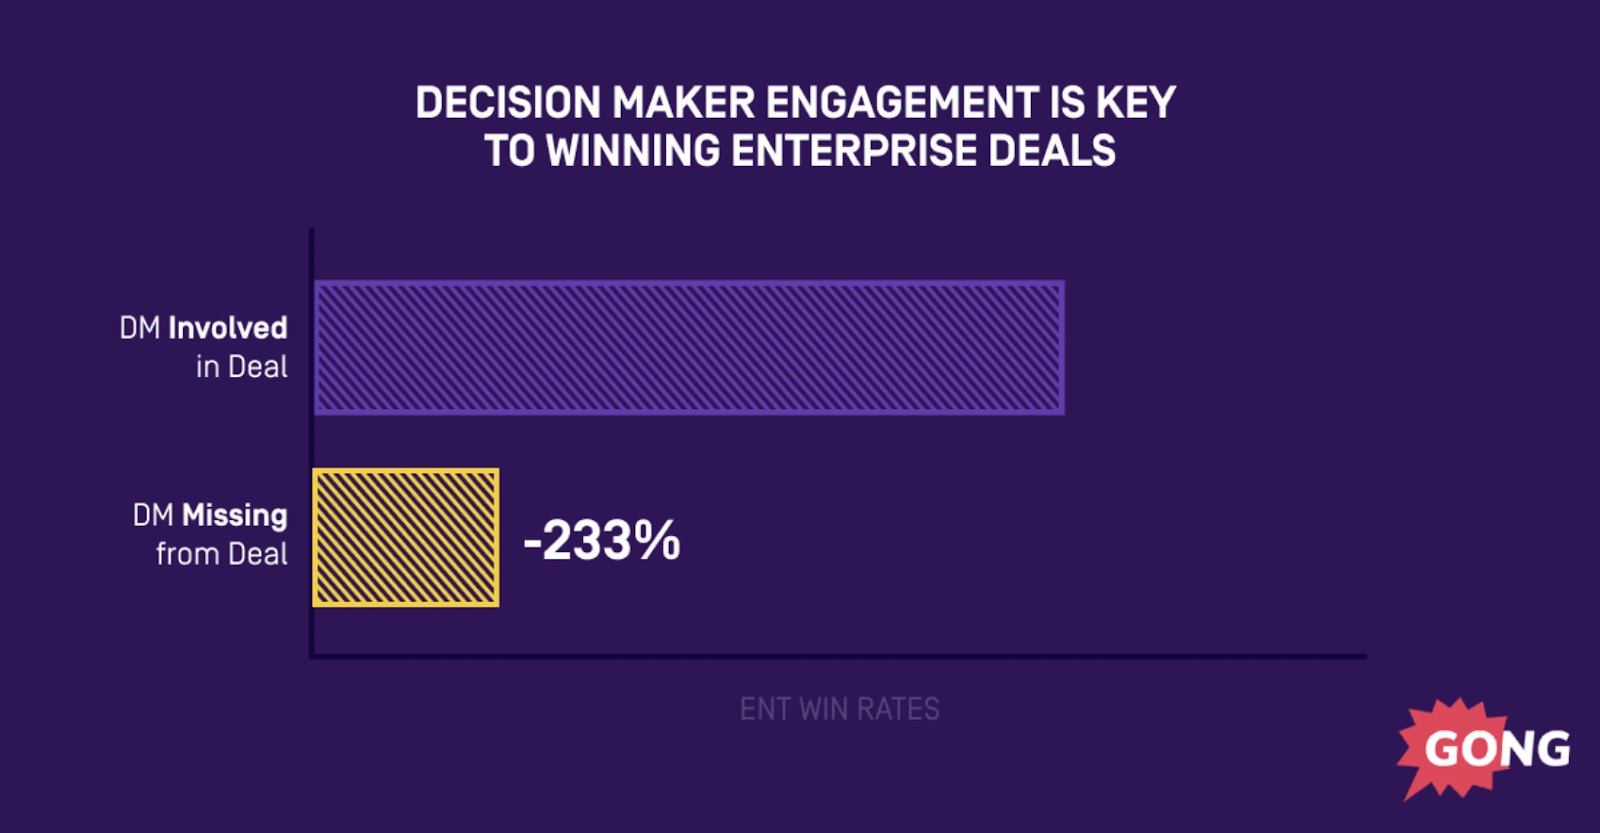 Impact of decision makers on enterprise deals